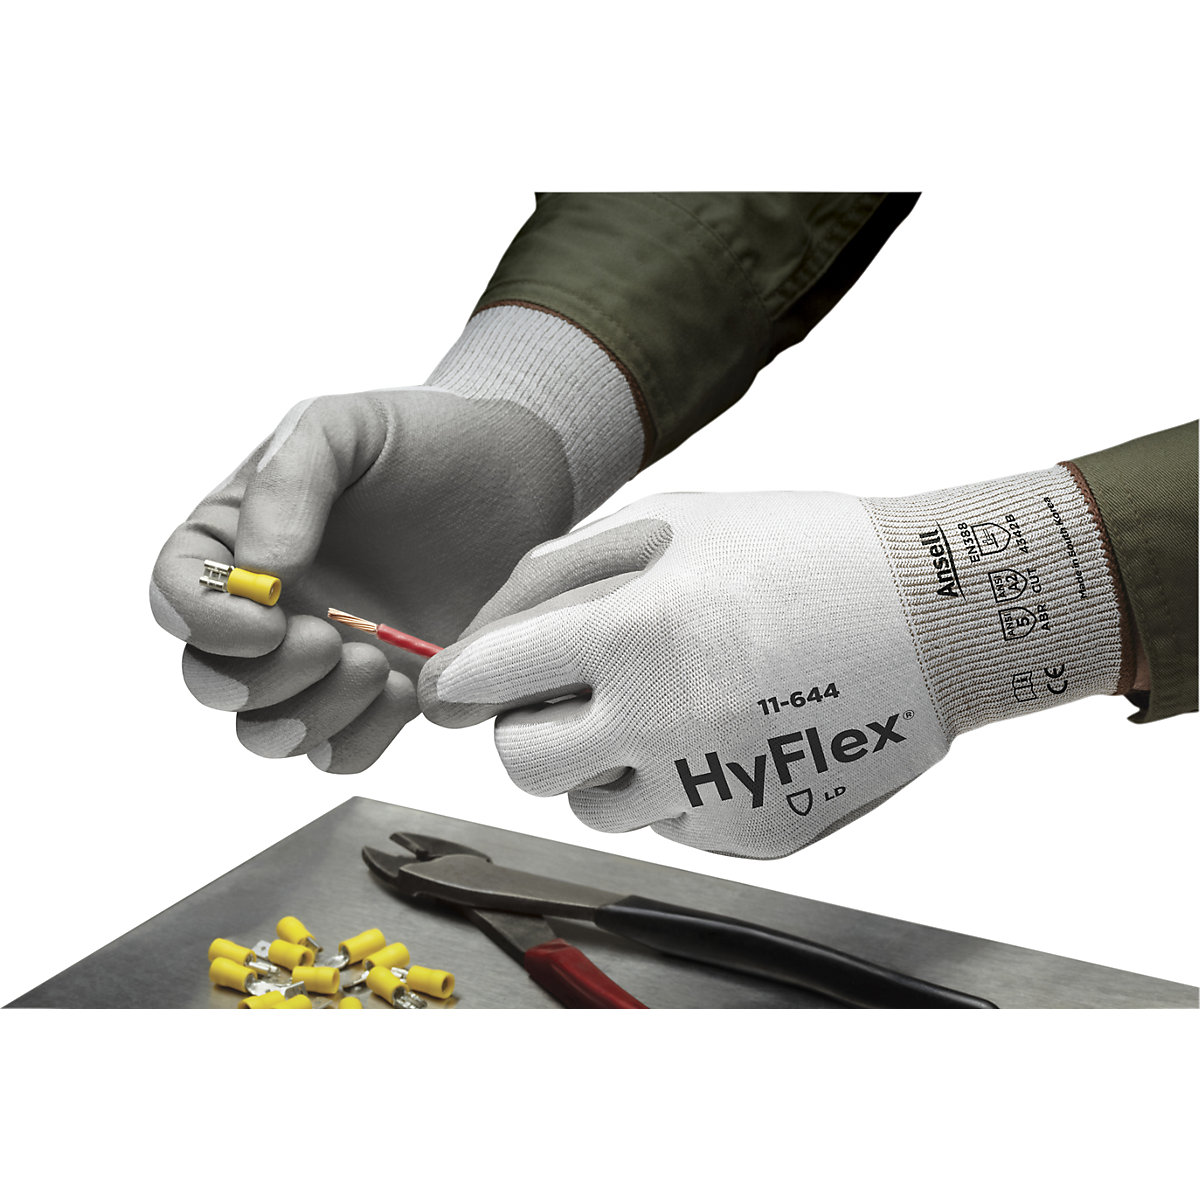 Luva de trabalho HyFlex® 11-644 – Ansell (Imagem do produto 6)-5